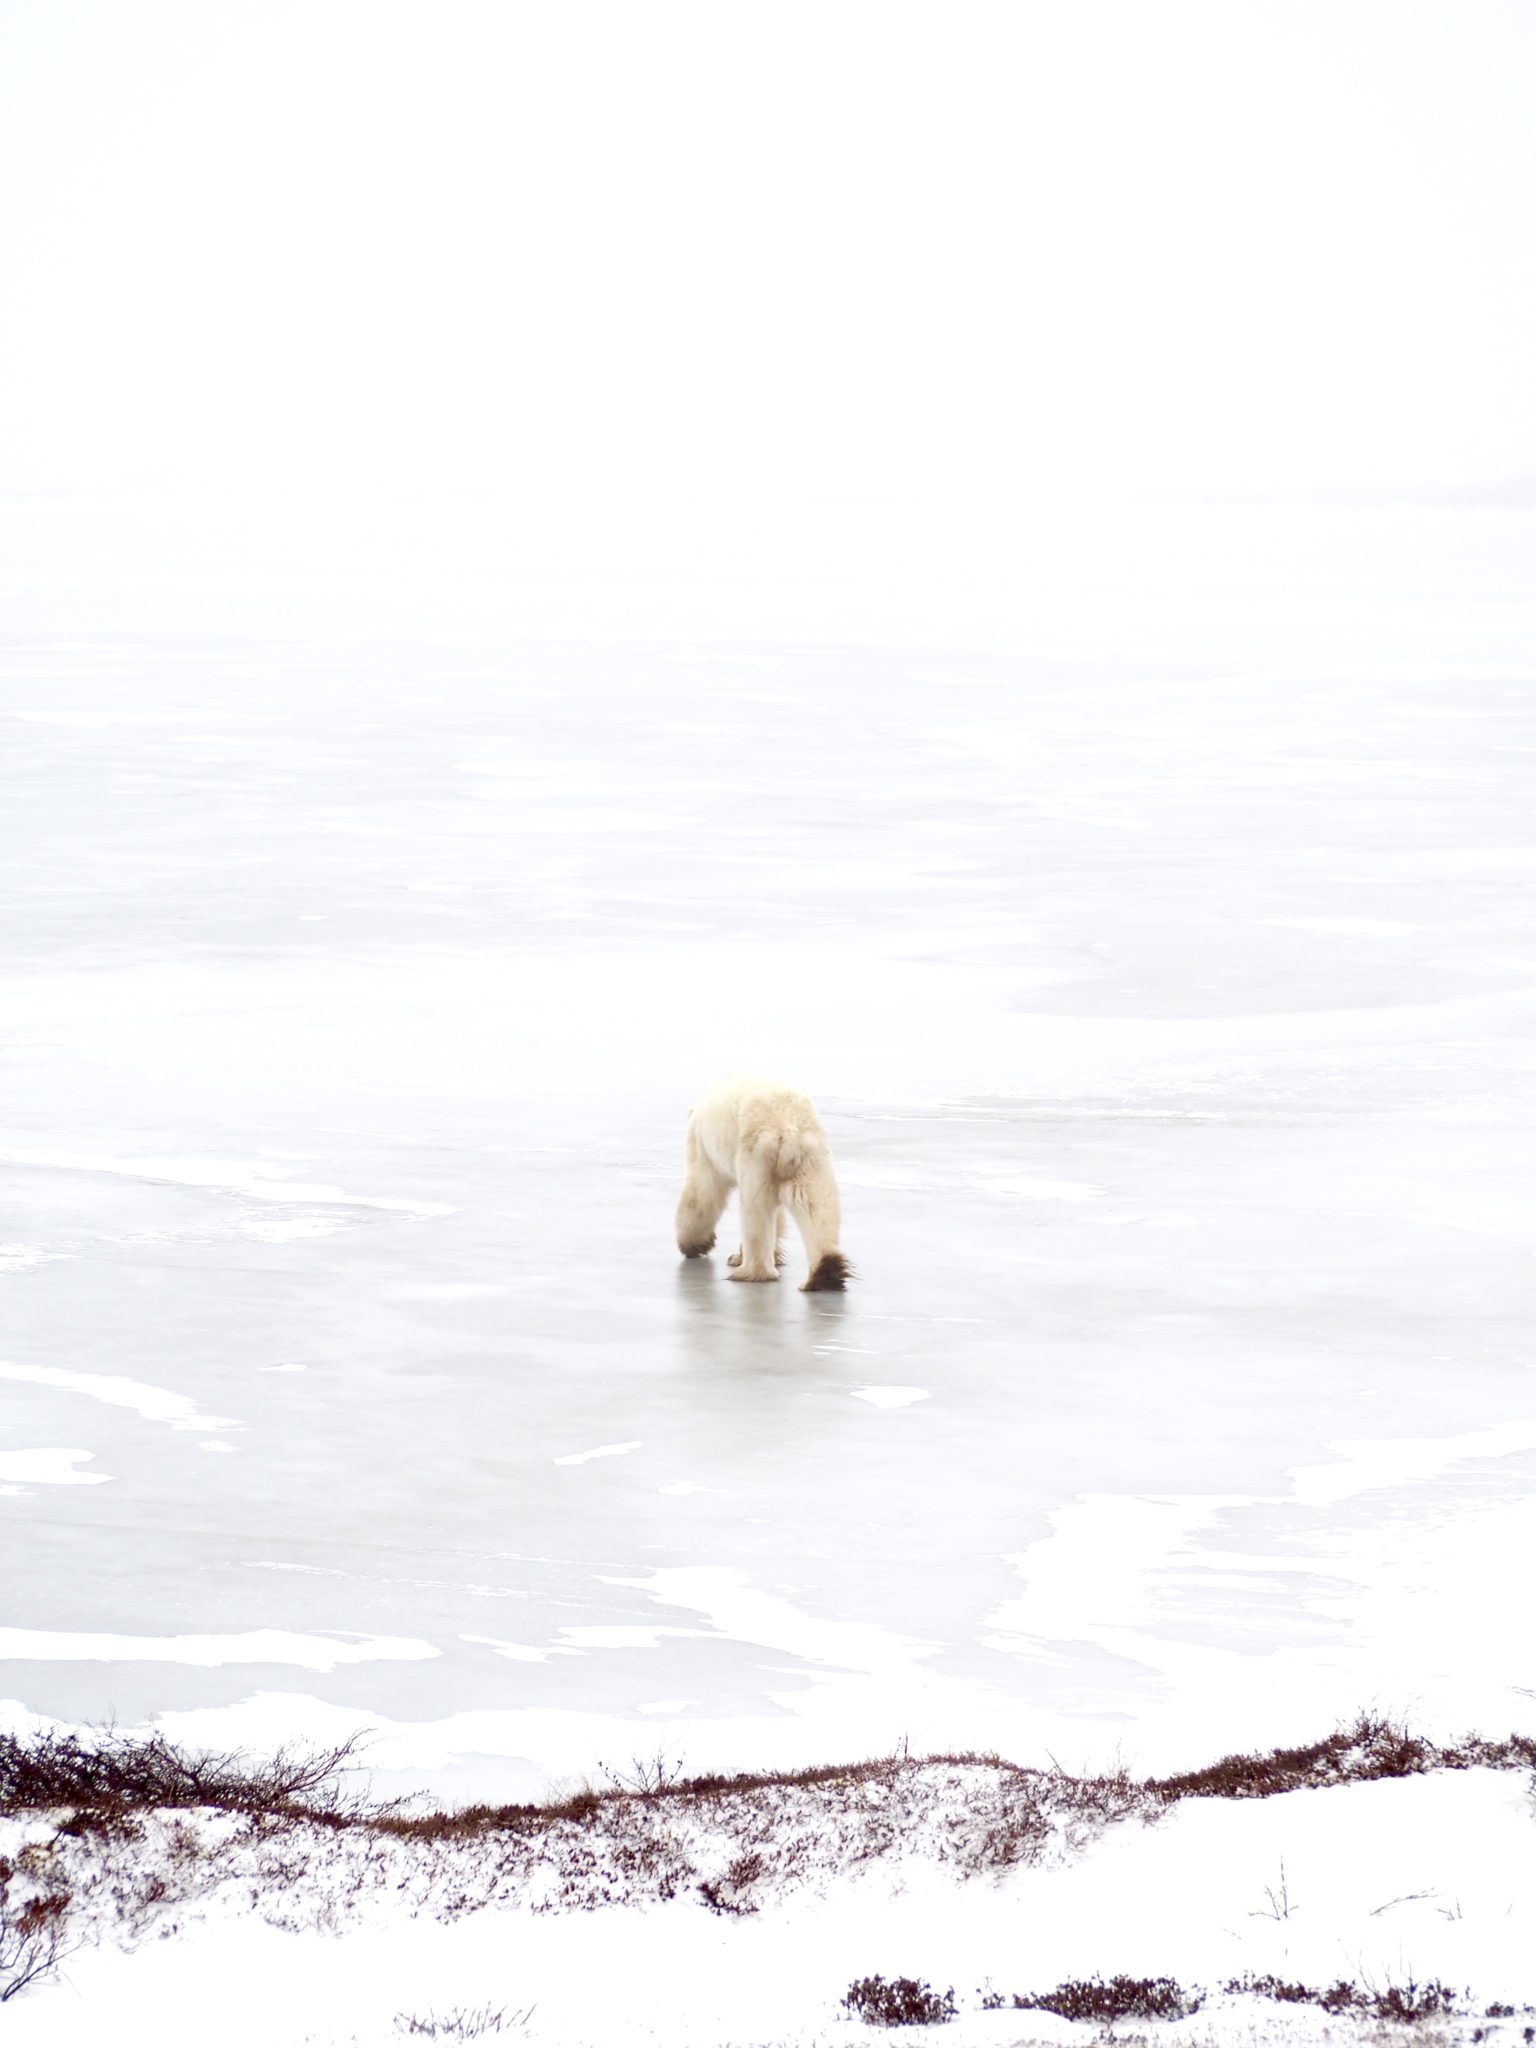 Visiting the Polar Bear Capital of the World